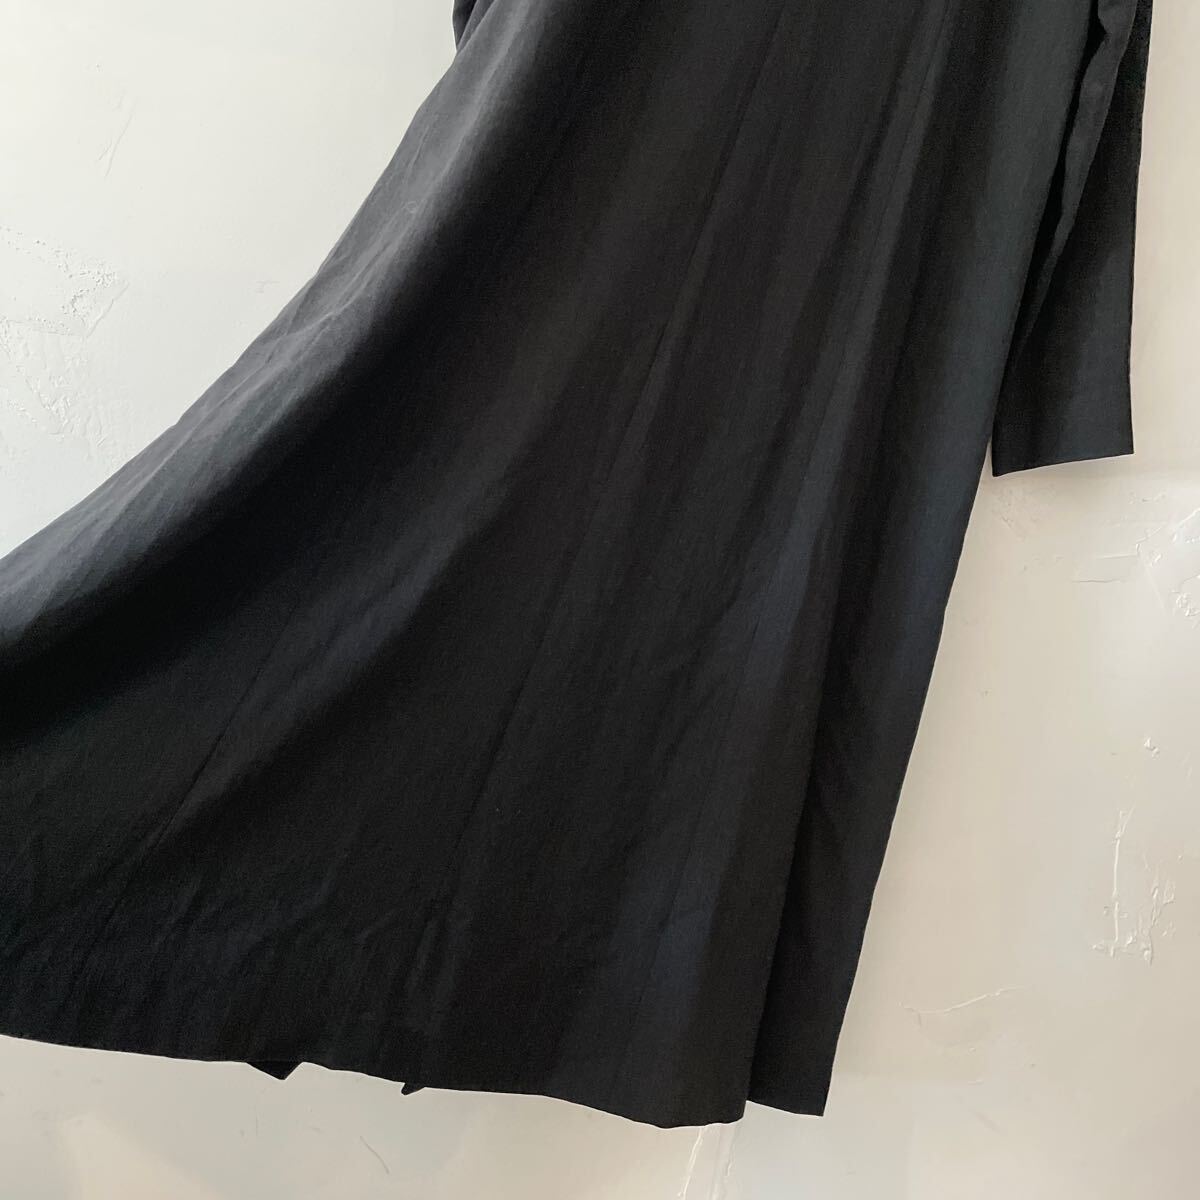  Jurgen Lehl длинный One-piece 4 макси длина длинное пальто шерсть чёрный черный темно-серый M размер длинный рукав JURGEN LEHL no color шерсть 